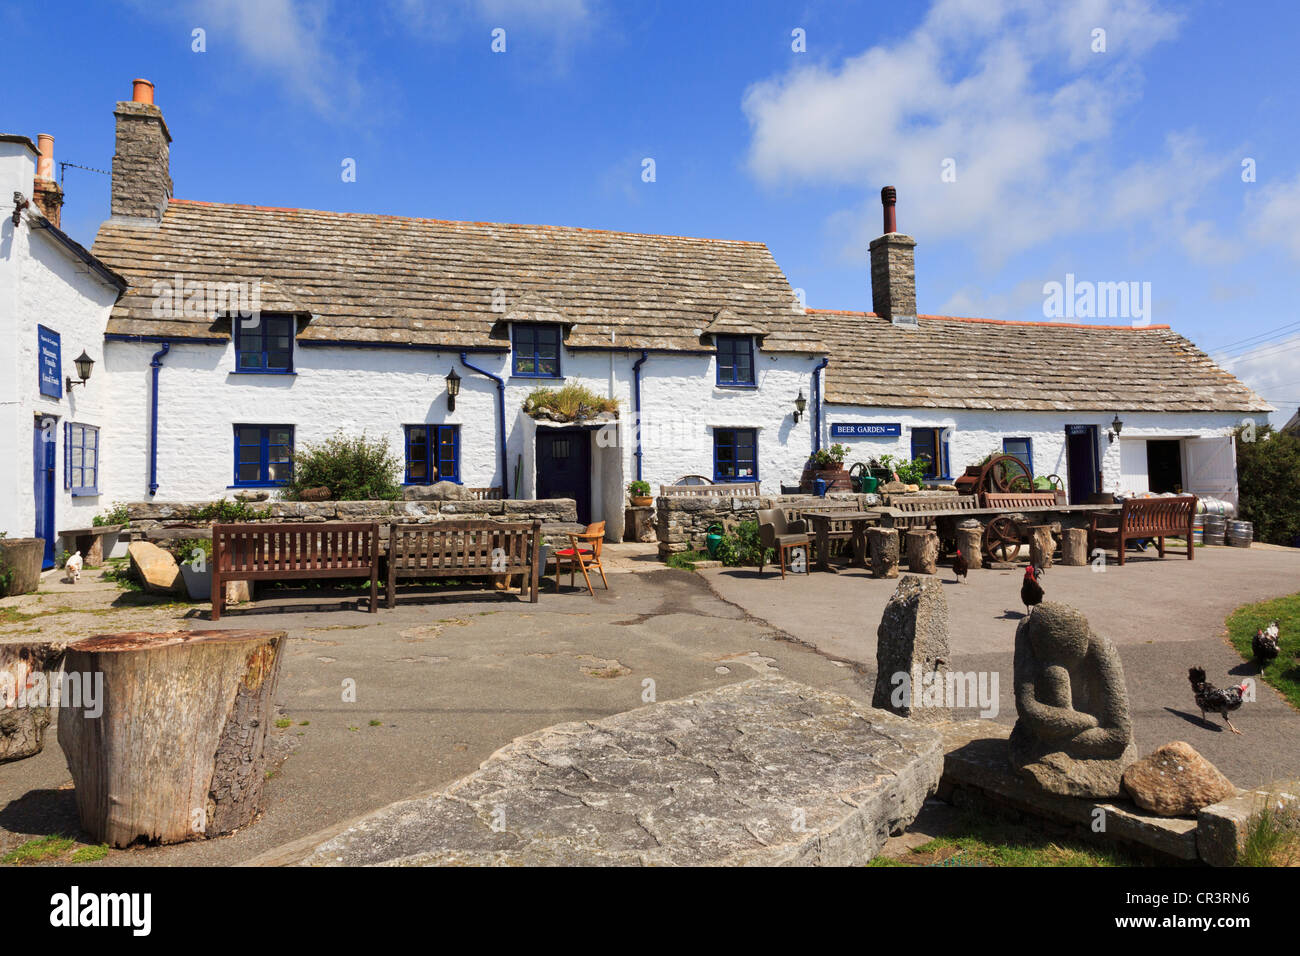 Traditionellen alten Platz und Kompass Land Pub Äußeres in einem Purbeck Dorf der Wert Matravers Purbeck Dorset England UK Großbritannien Stockfoto